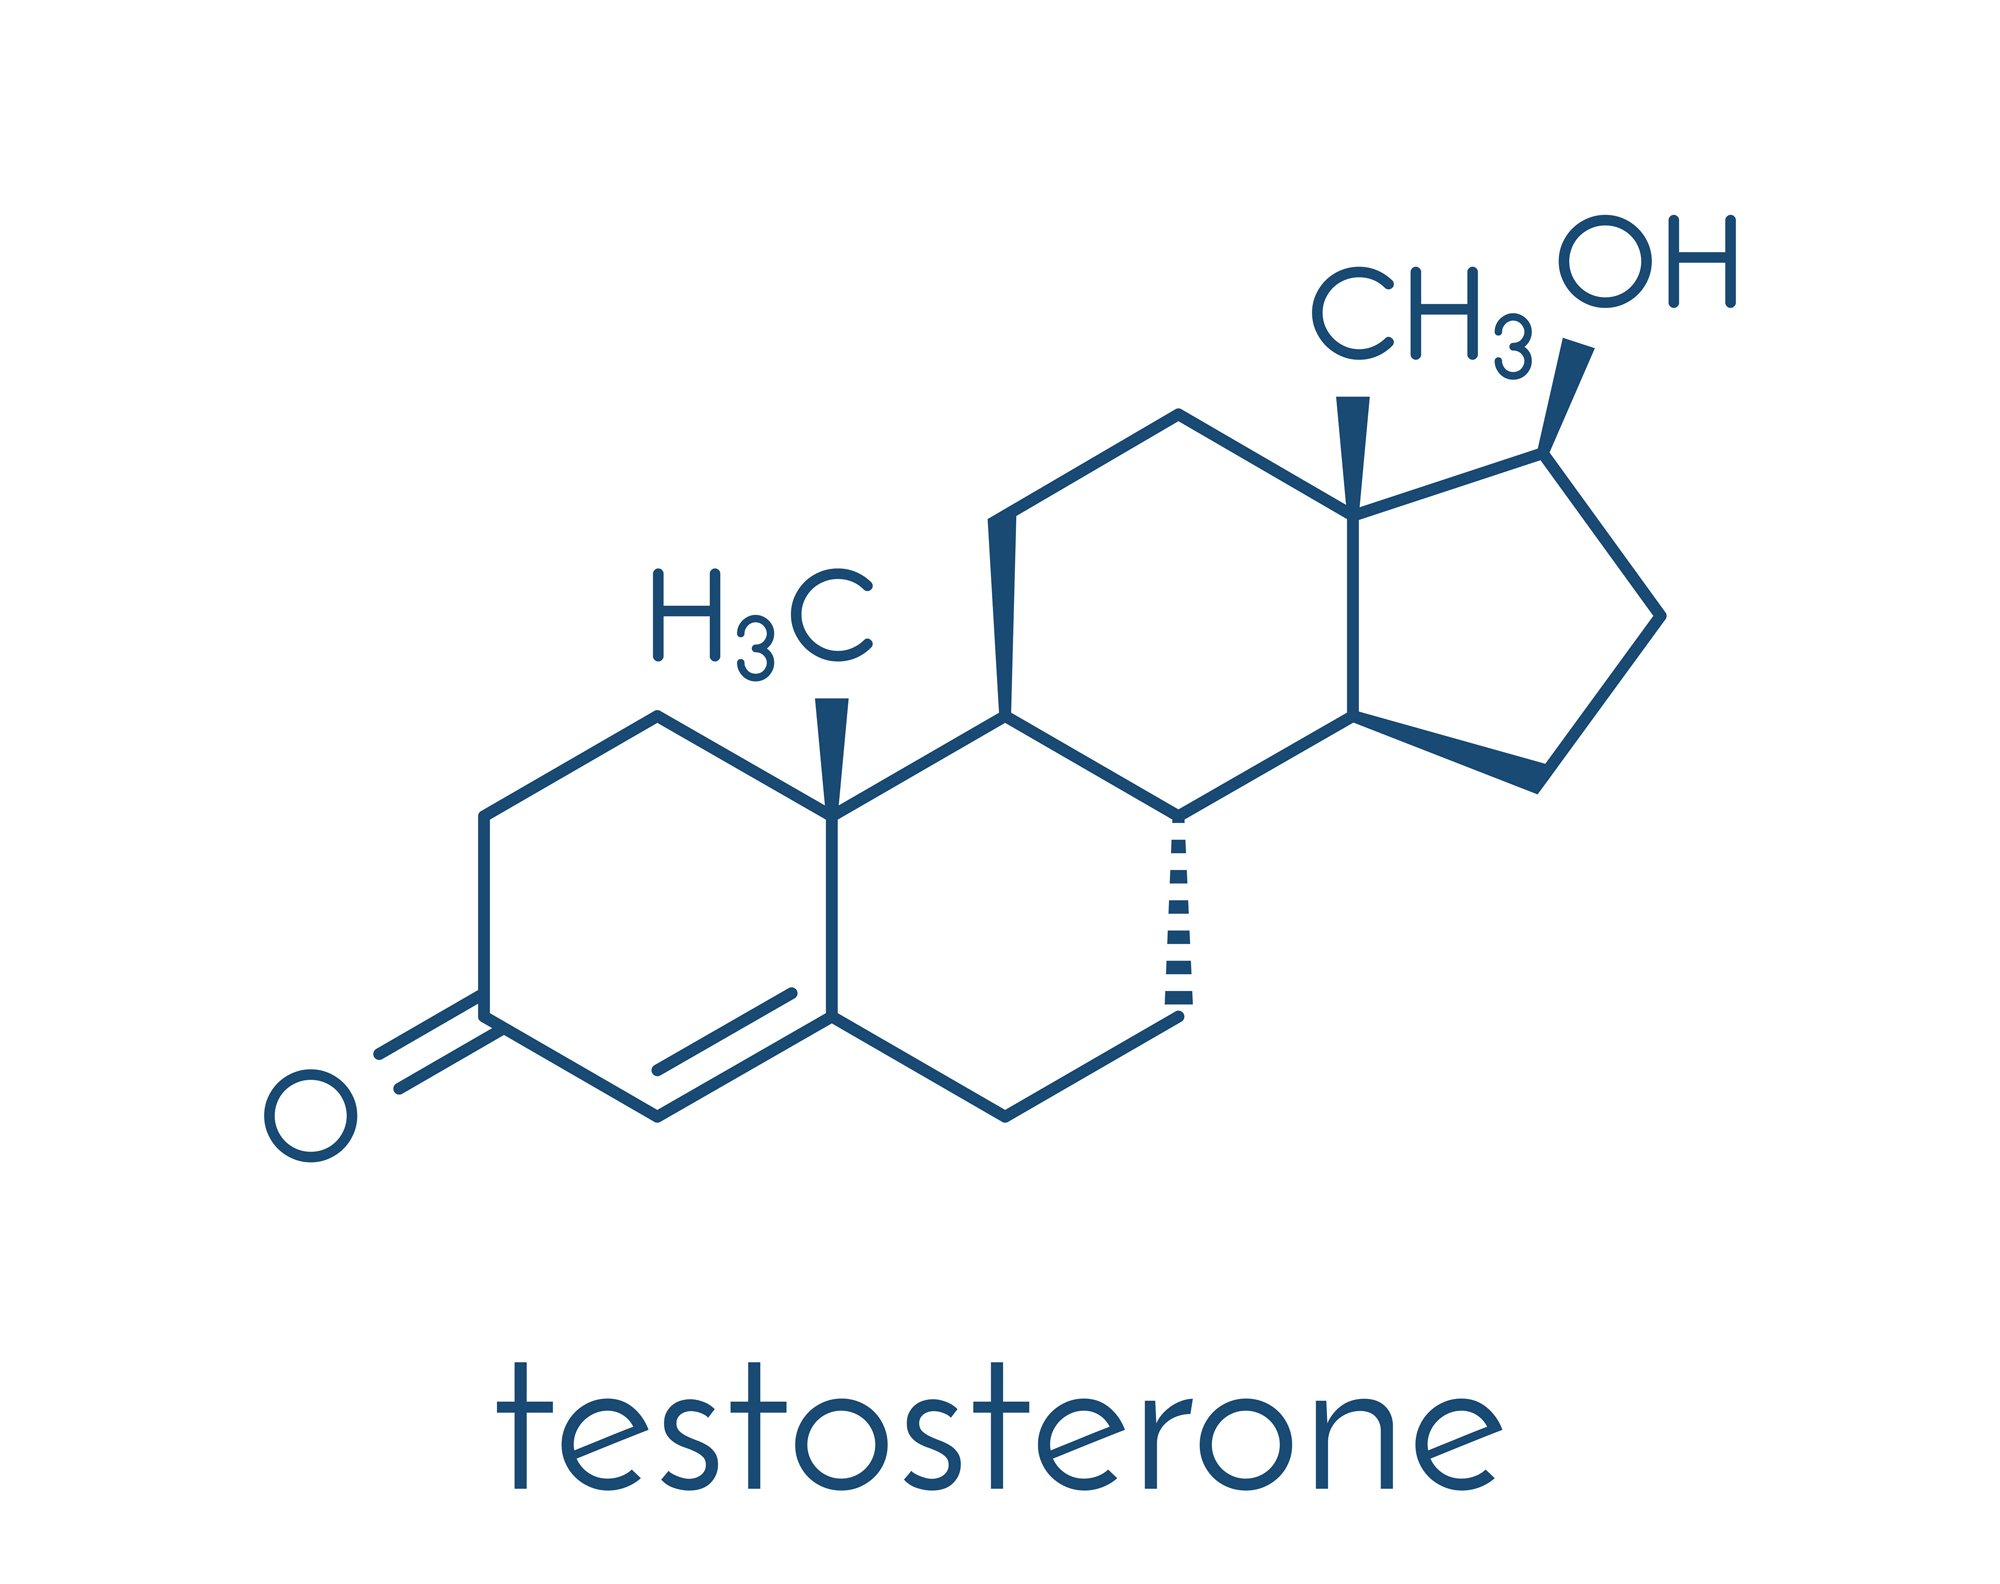 Représentation de la testostérone, l'hormone mâle.